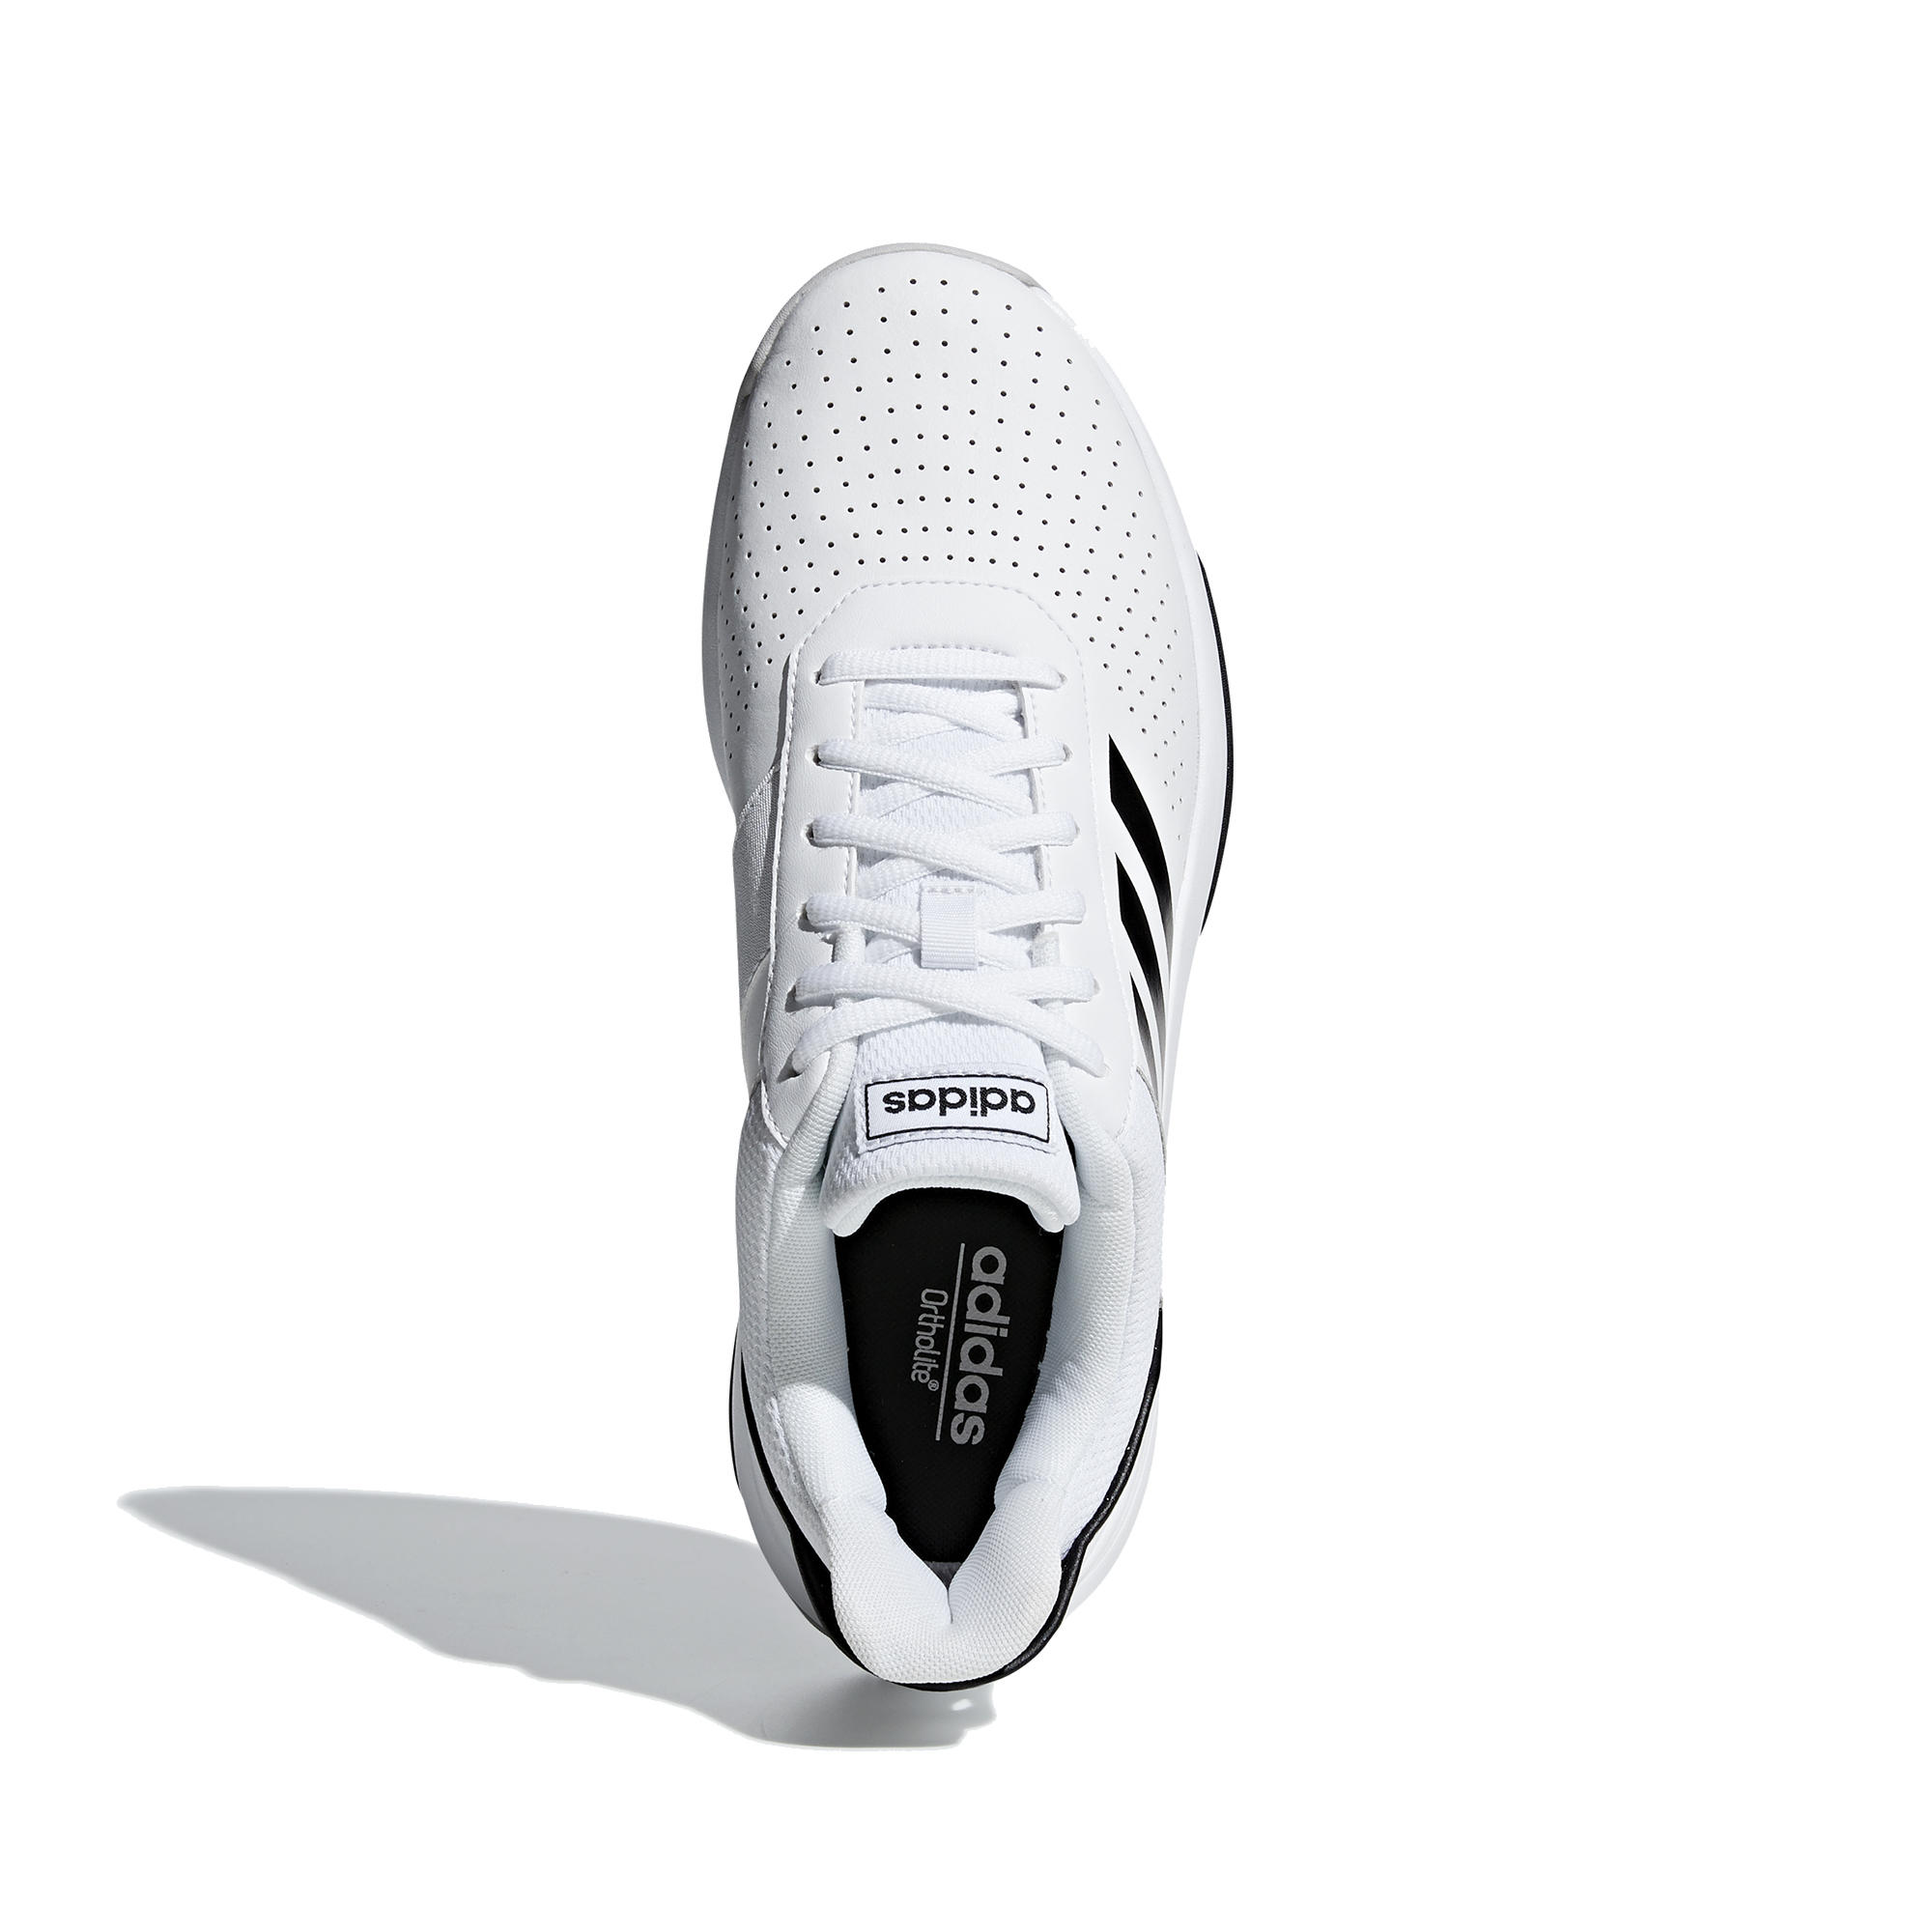 Men's Tennis Shoes Courtsmash - White 6/9